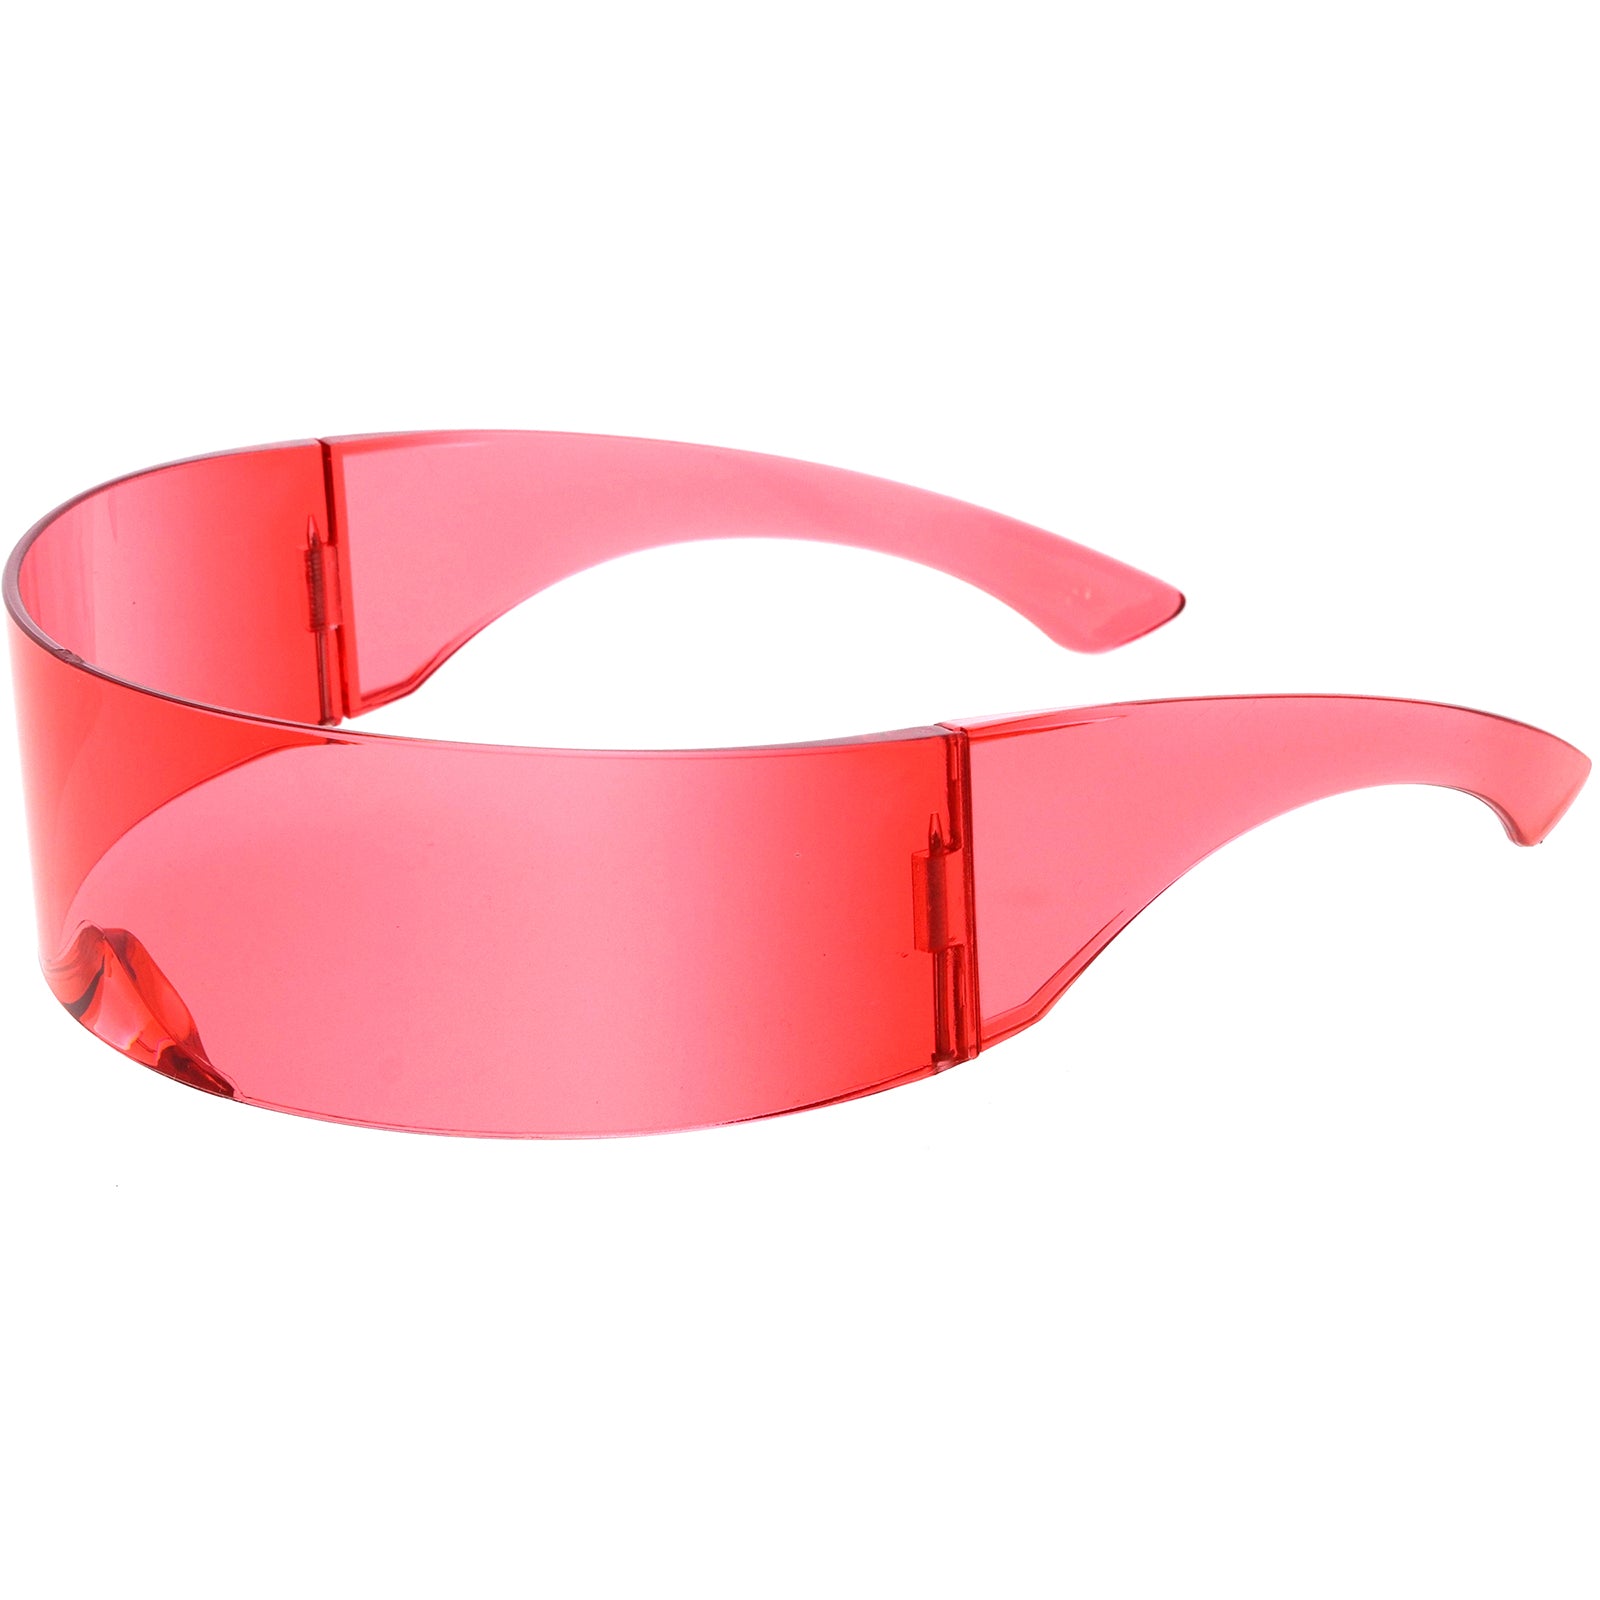 Futuristic Wrap Around Monoblock Shield Sunglasses